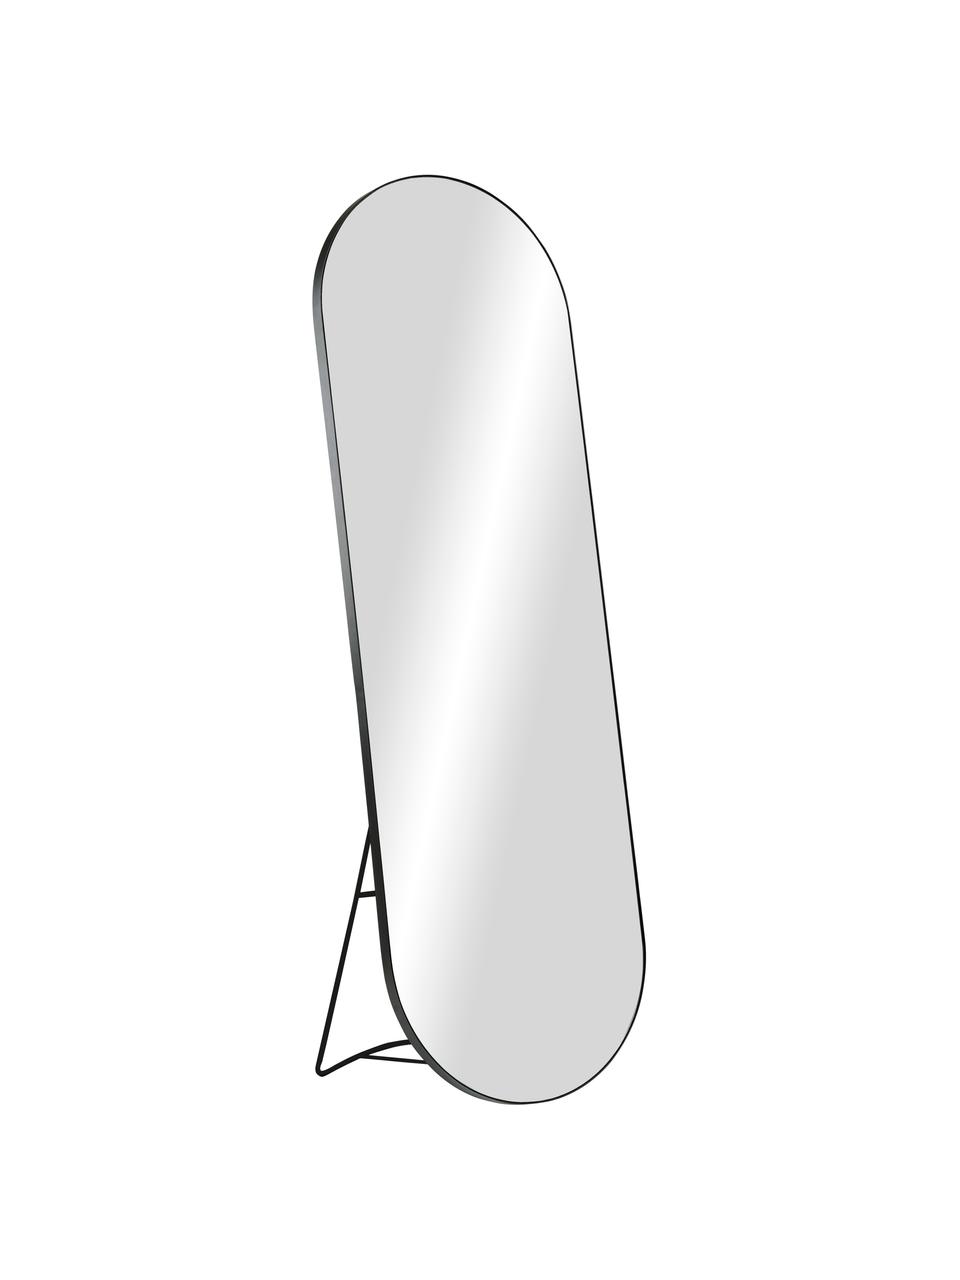 Ovaler Standspiegel Stano mit schwarzem Metallrahmen, Rahmen: Metall, beschichtet, Spiegelfläche: Spiegelglas, Schwarz, B 55 x H 170 cm